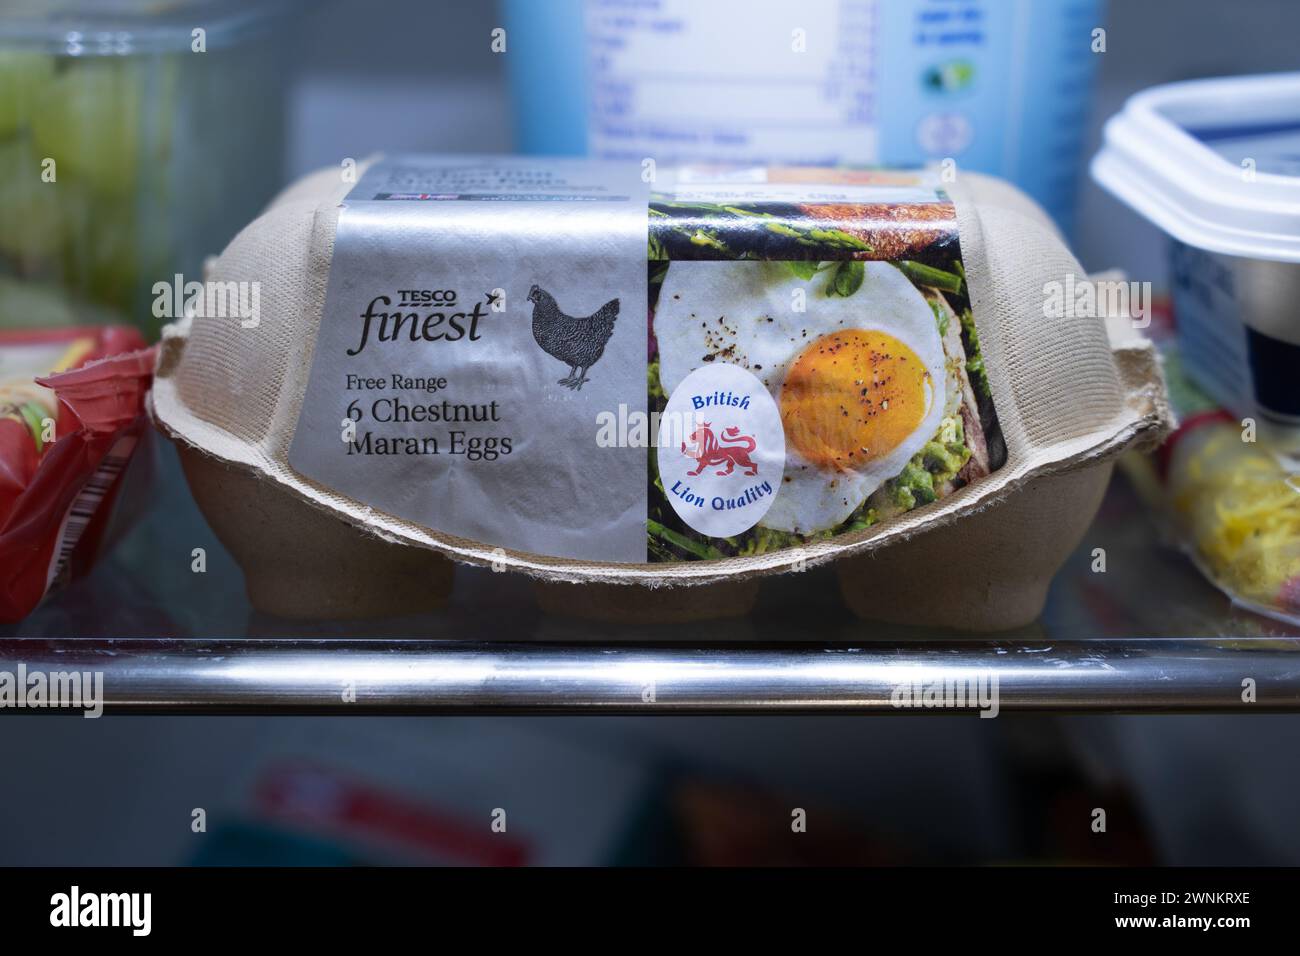 Tesco feinste maran maran-Freilandeier in einem Kühlschrankregal in einem Eierkarton, mit einem britischen Lion-Qualitätslogo an der Seite. UK Stockfoto